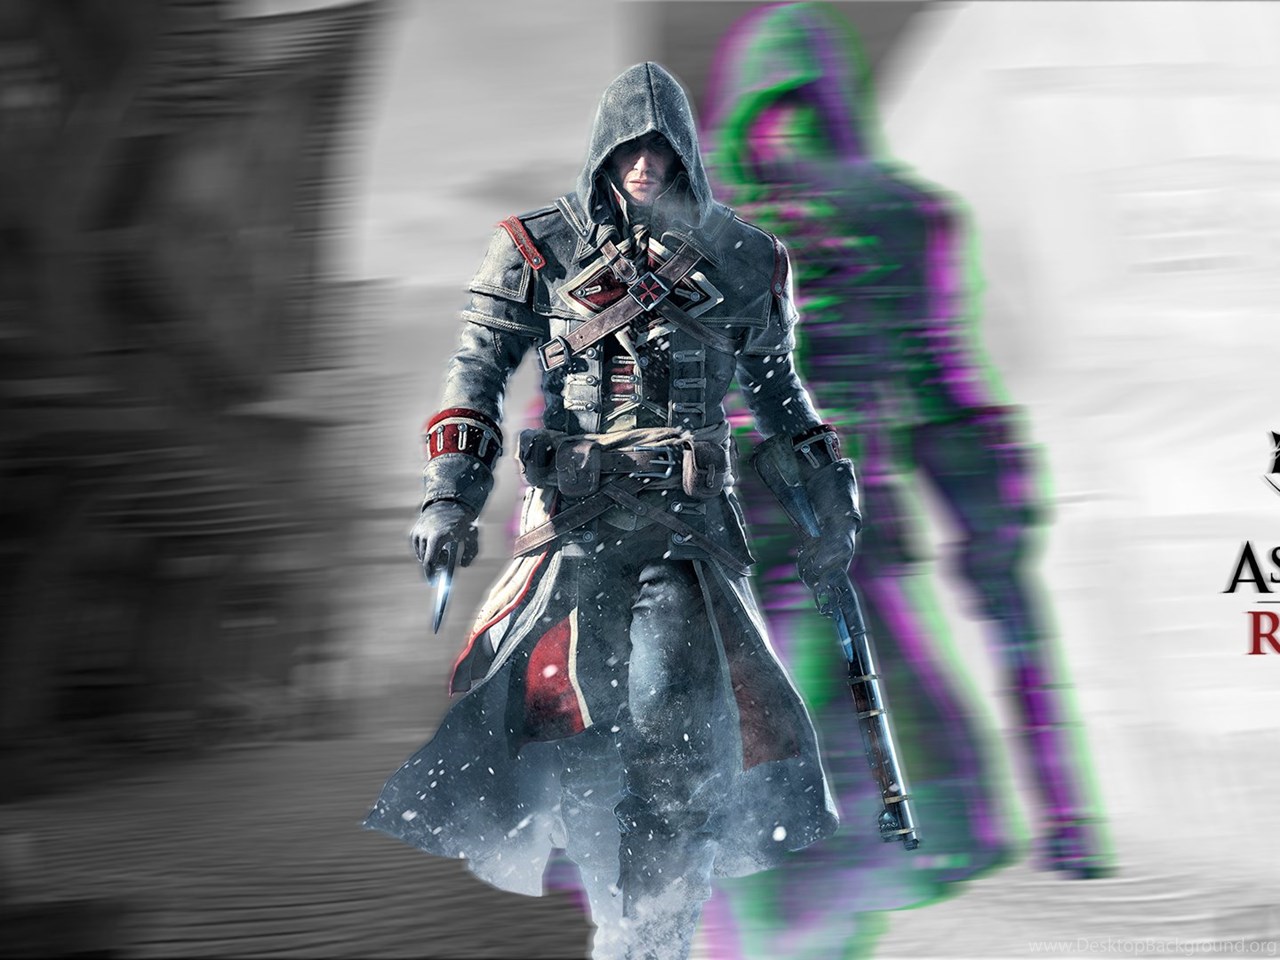 Download Wallpapers On Assassins Creed Fans DeviantArt Fullscreen Standart ...